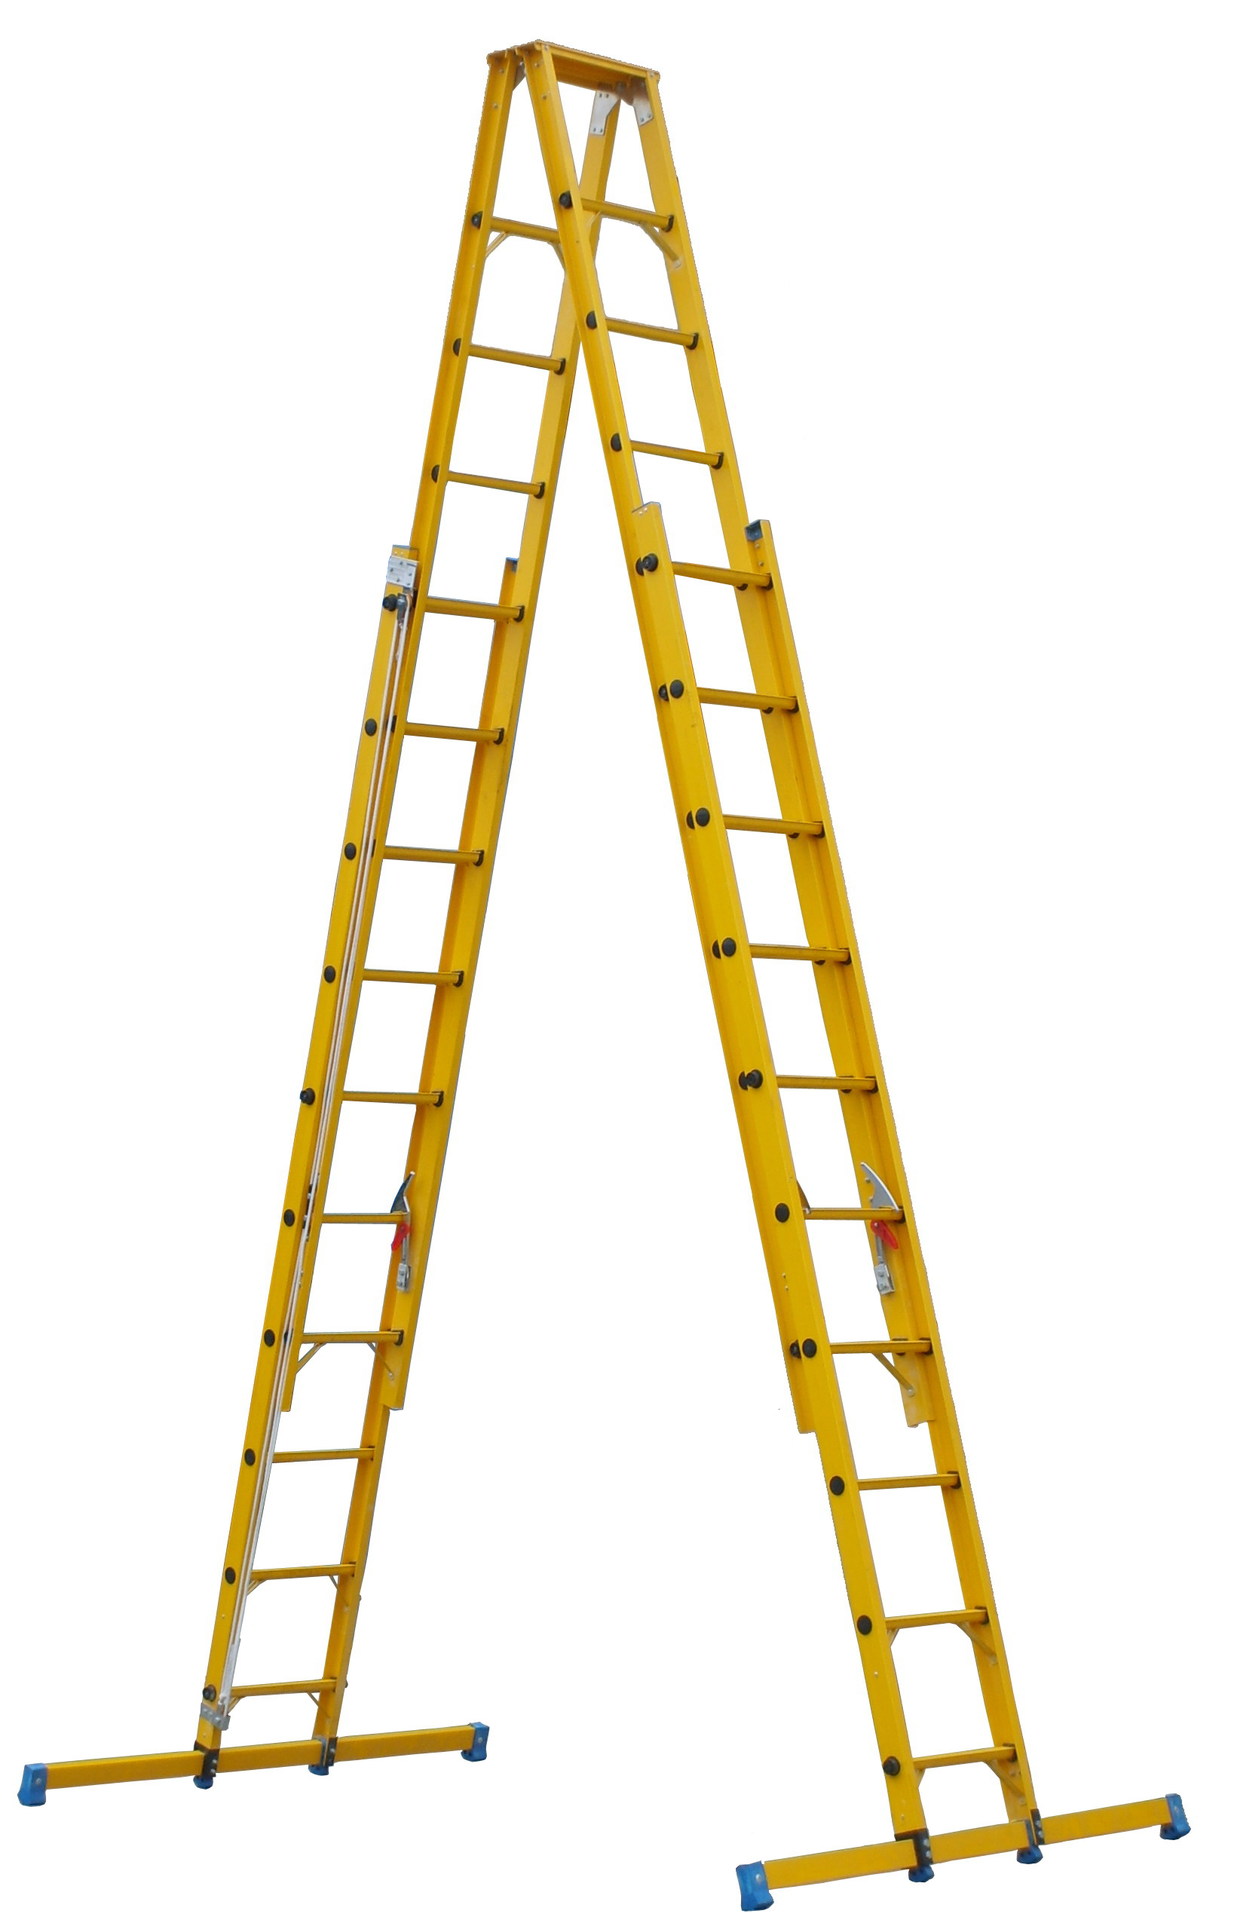 需使用梯子才能访问_使用梯子前,必须严格检查